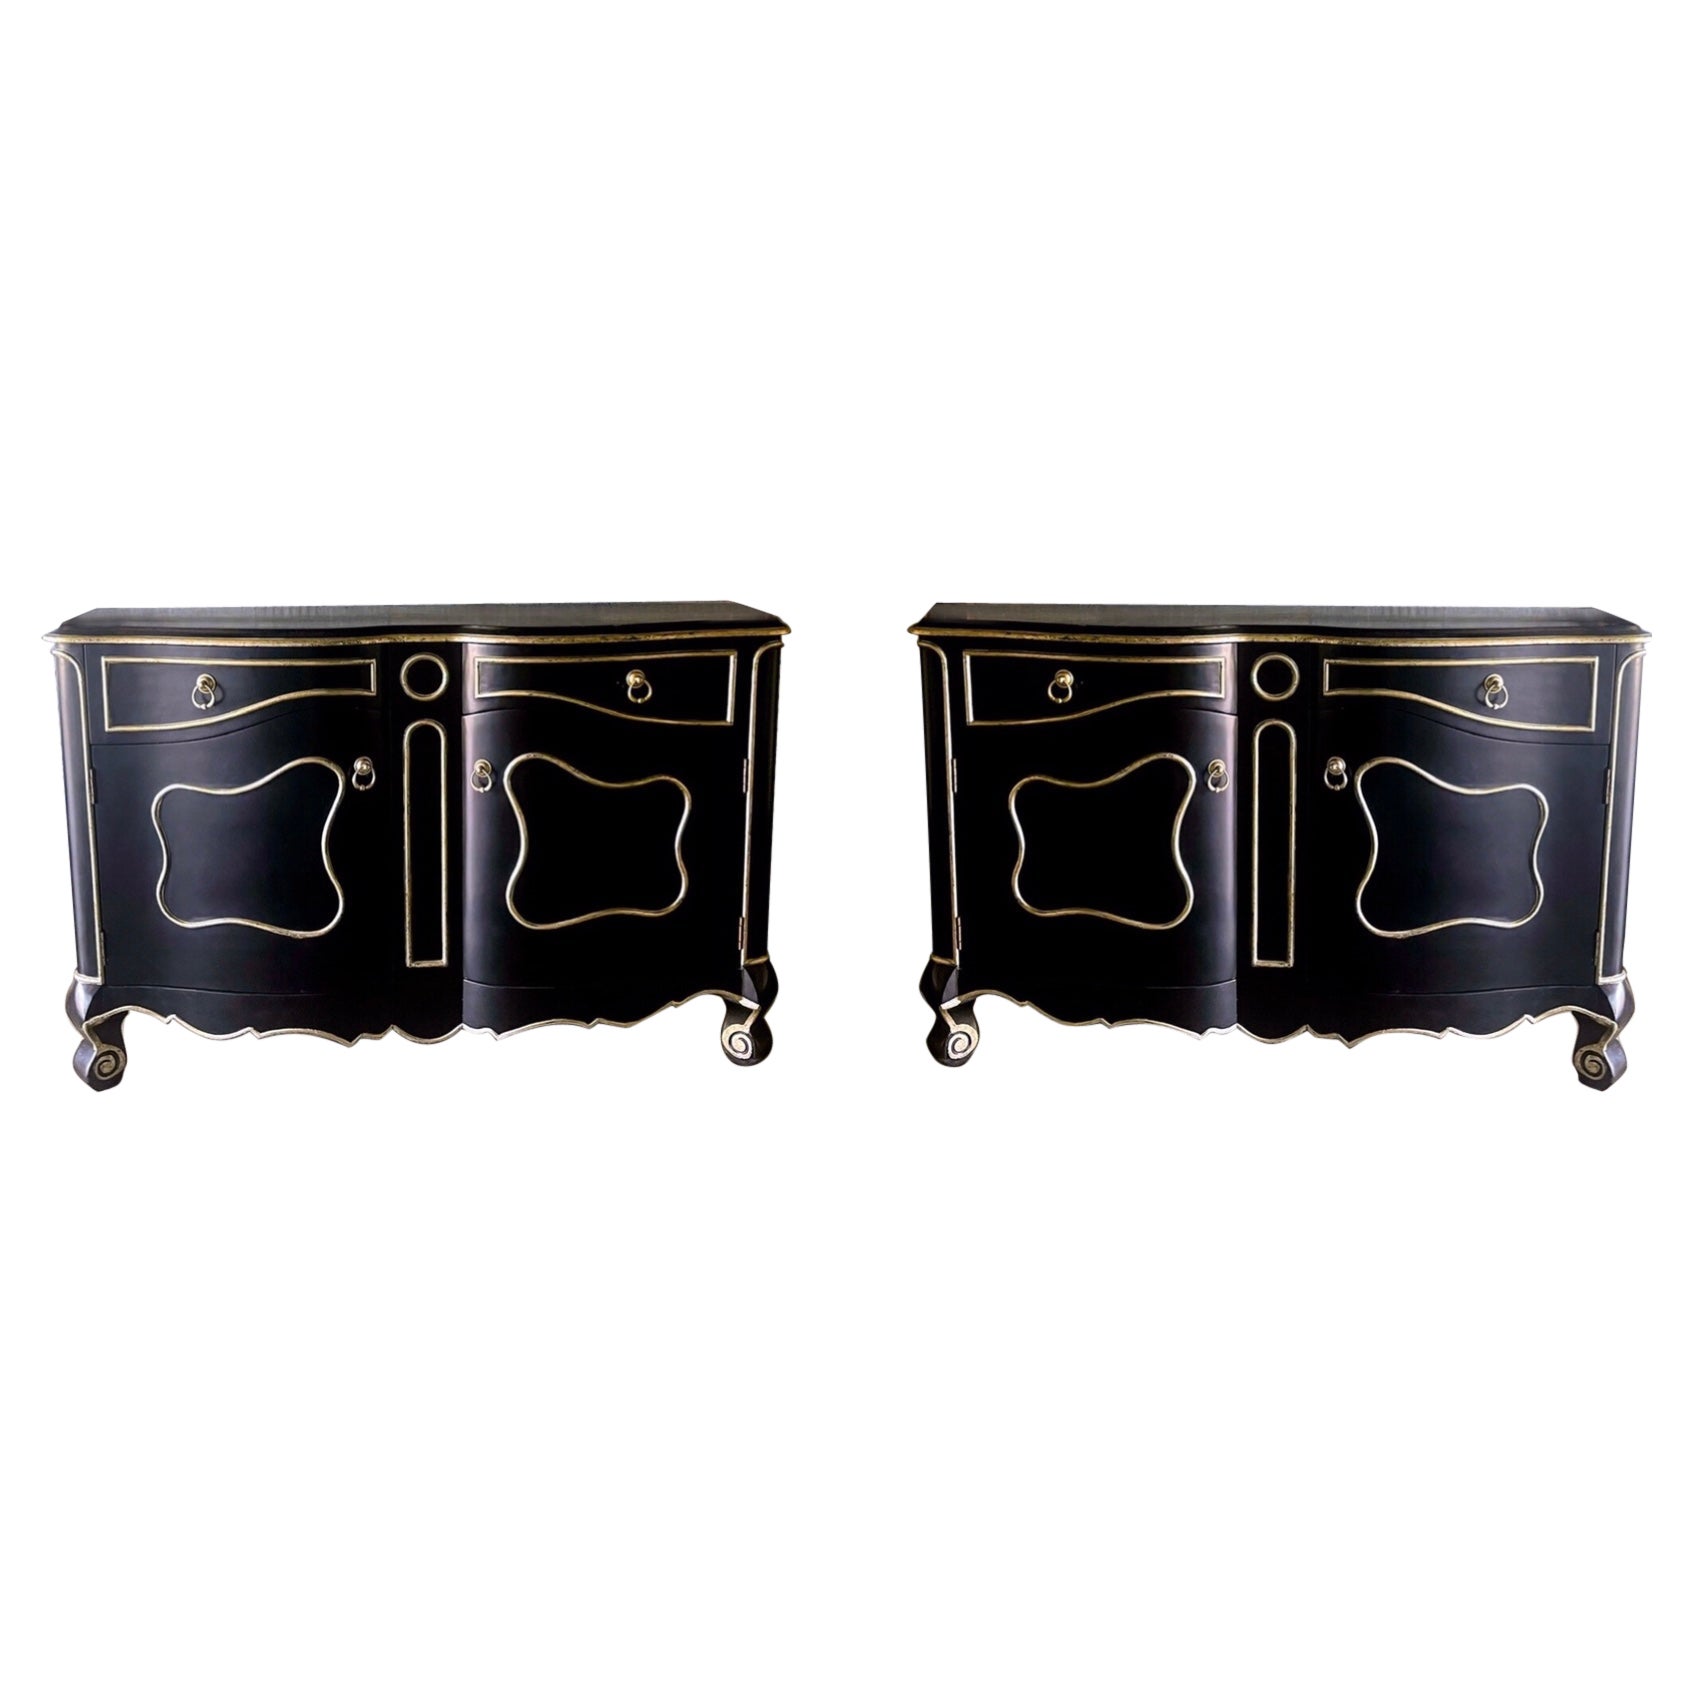 Fin du 20e siècle. Paire de meubles de rangement modernes français de style Louis XV en noir et argent doré en vente